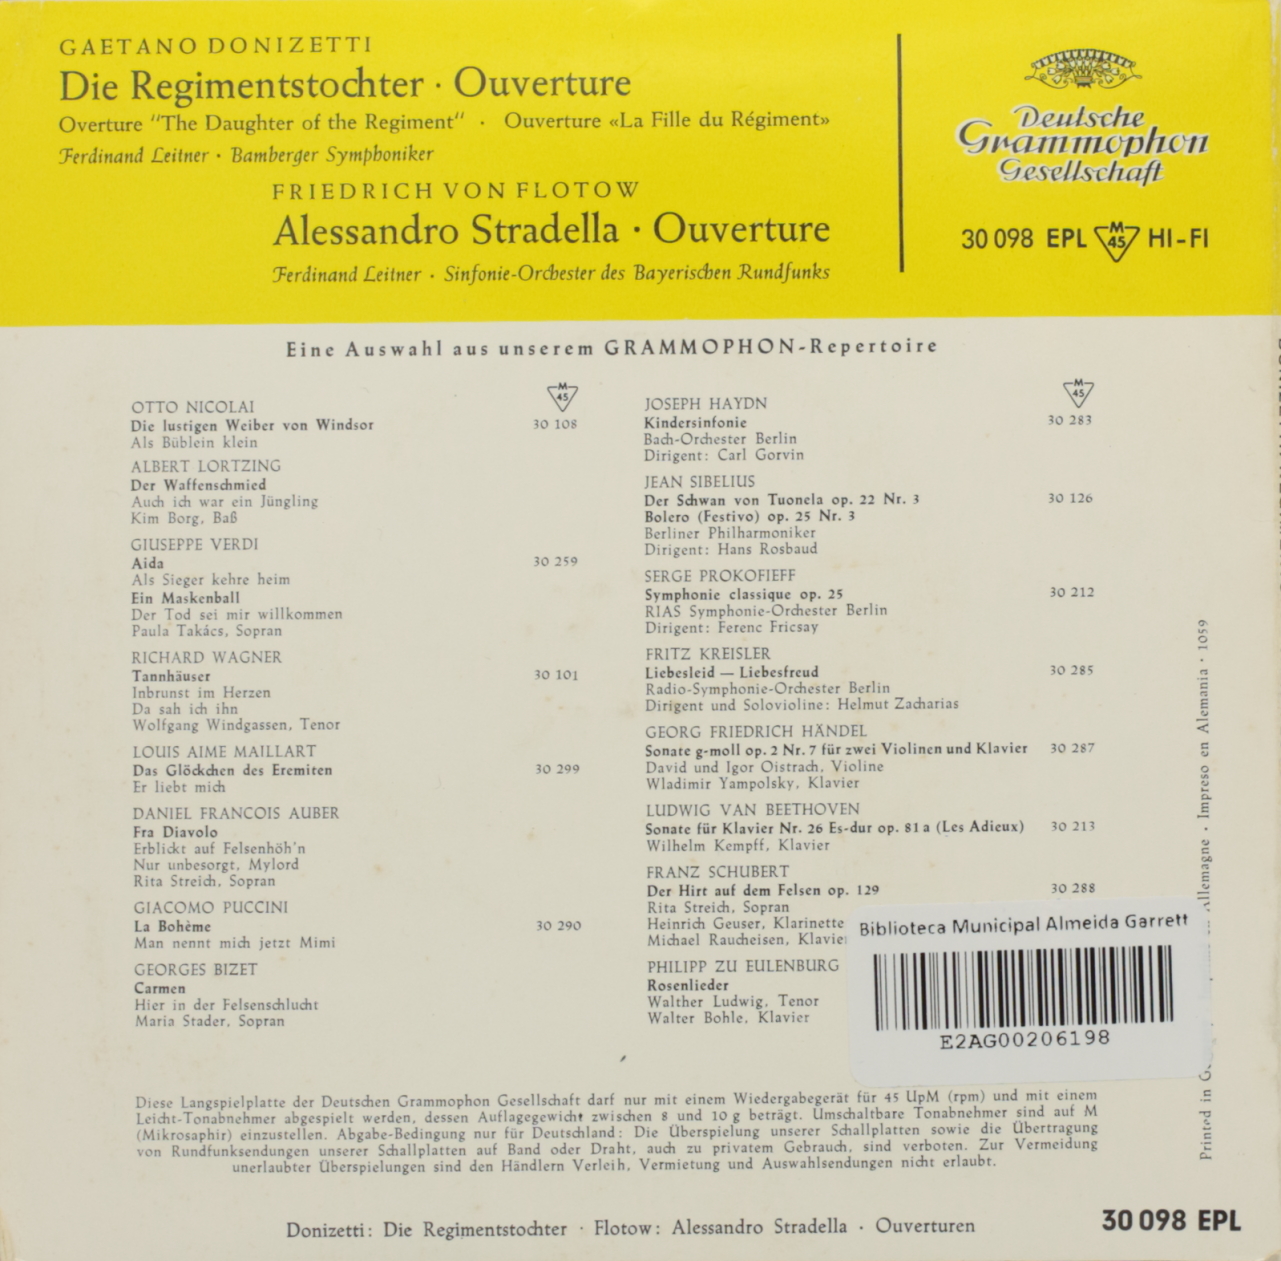 Donizetti: Die Regimentstochter - Ouverture / Von Flotow: Alessandro Stradella - Ouverture